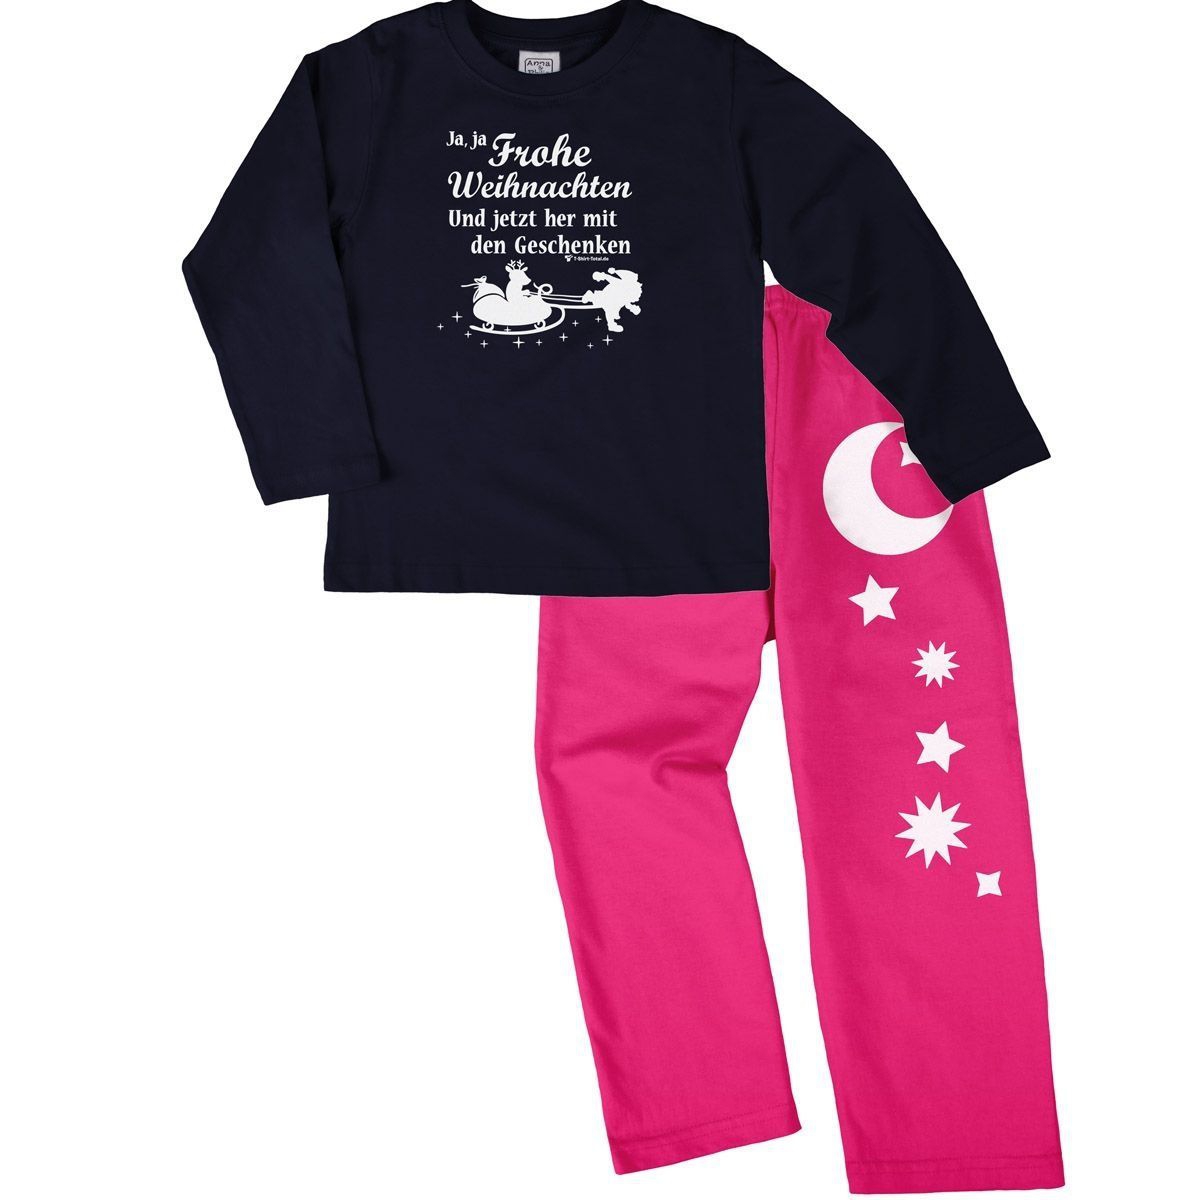 Ja ja Frohe Weihnachten Pyjama Set navy / pink 92